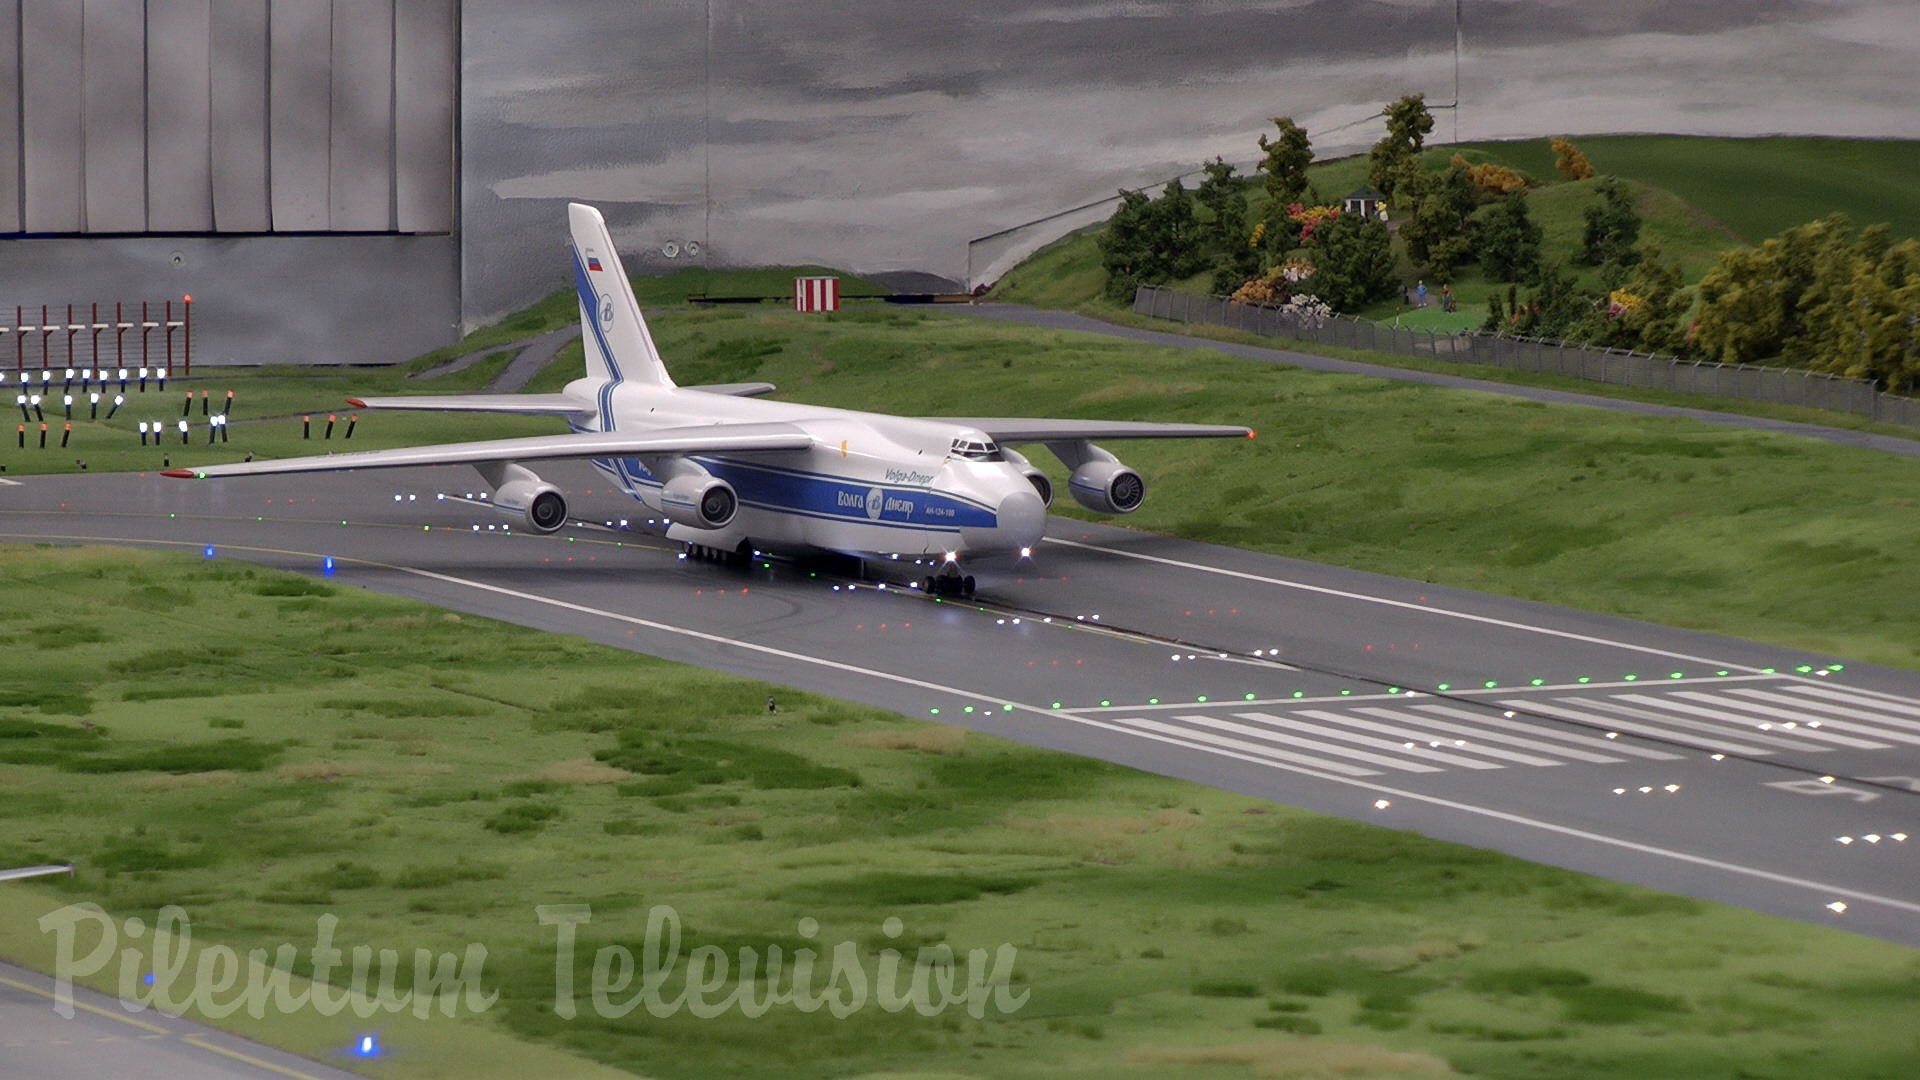 Aerodrom complet funcțional cu decolări și aterizări - Aeroport miniatural în scară 1/87